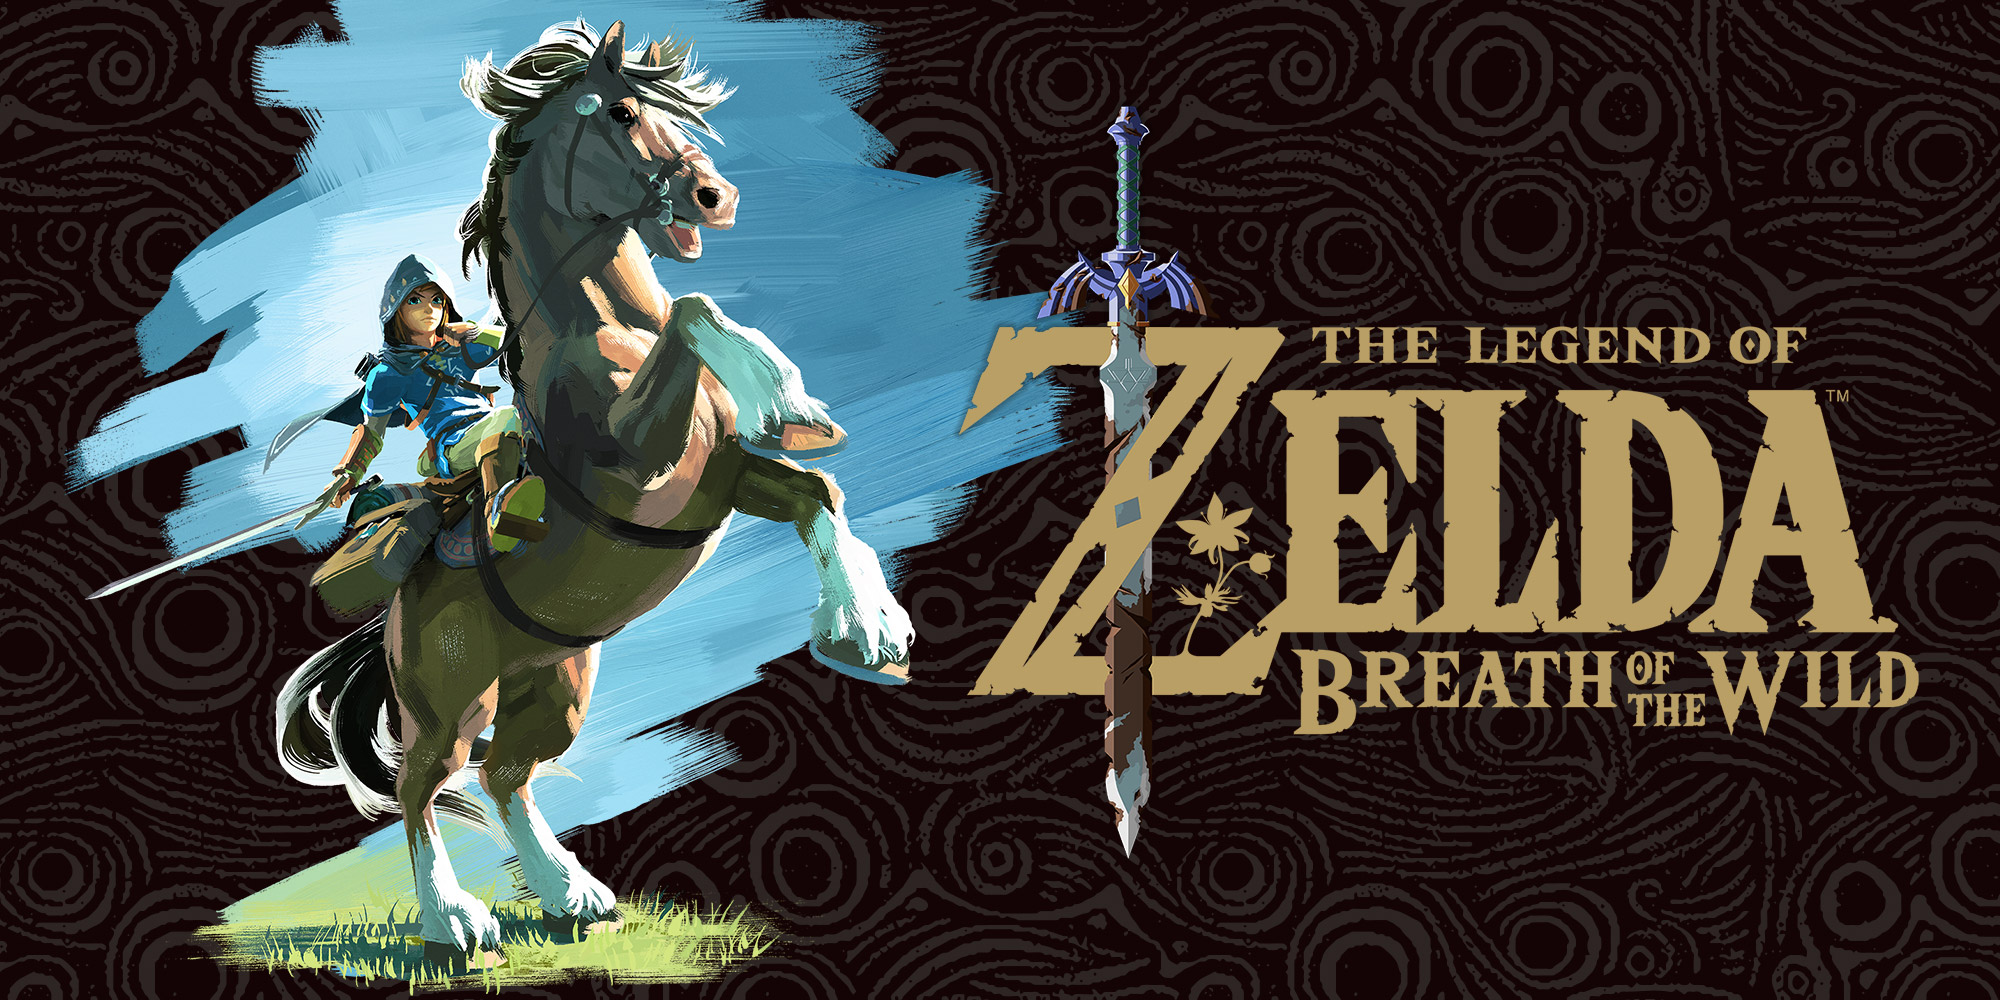 Узнайте, что могут новые amiibo из коллекции The Legend of Zelda в The Legend of Zelda: Breath of the Wild!